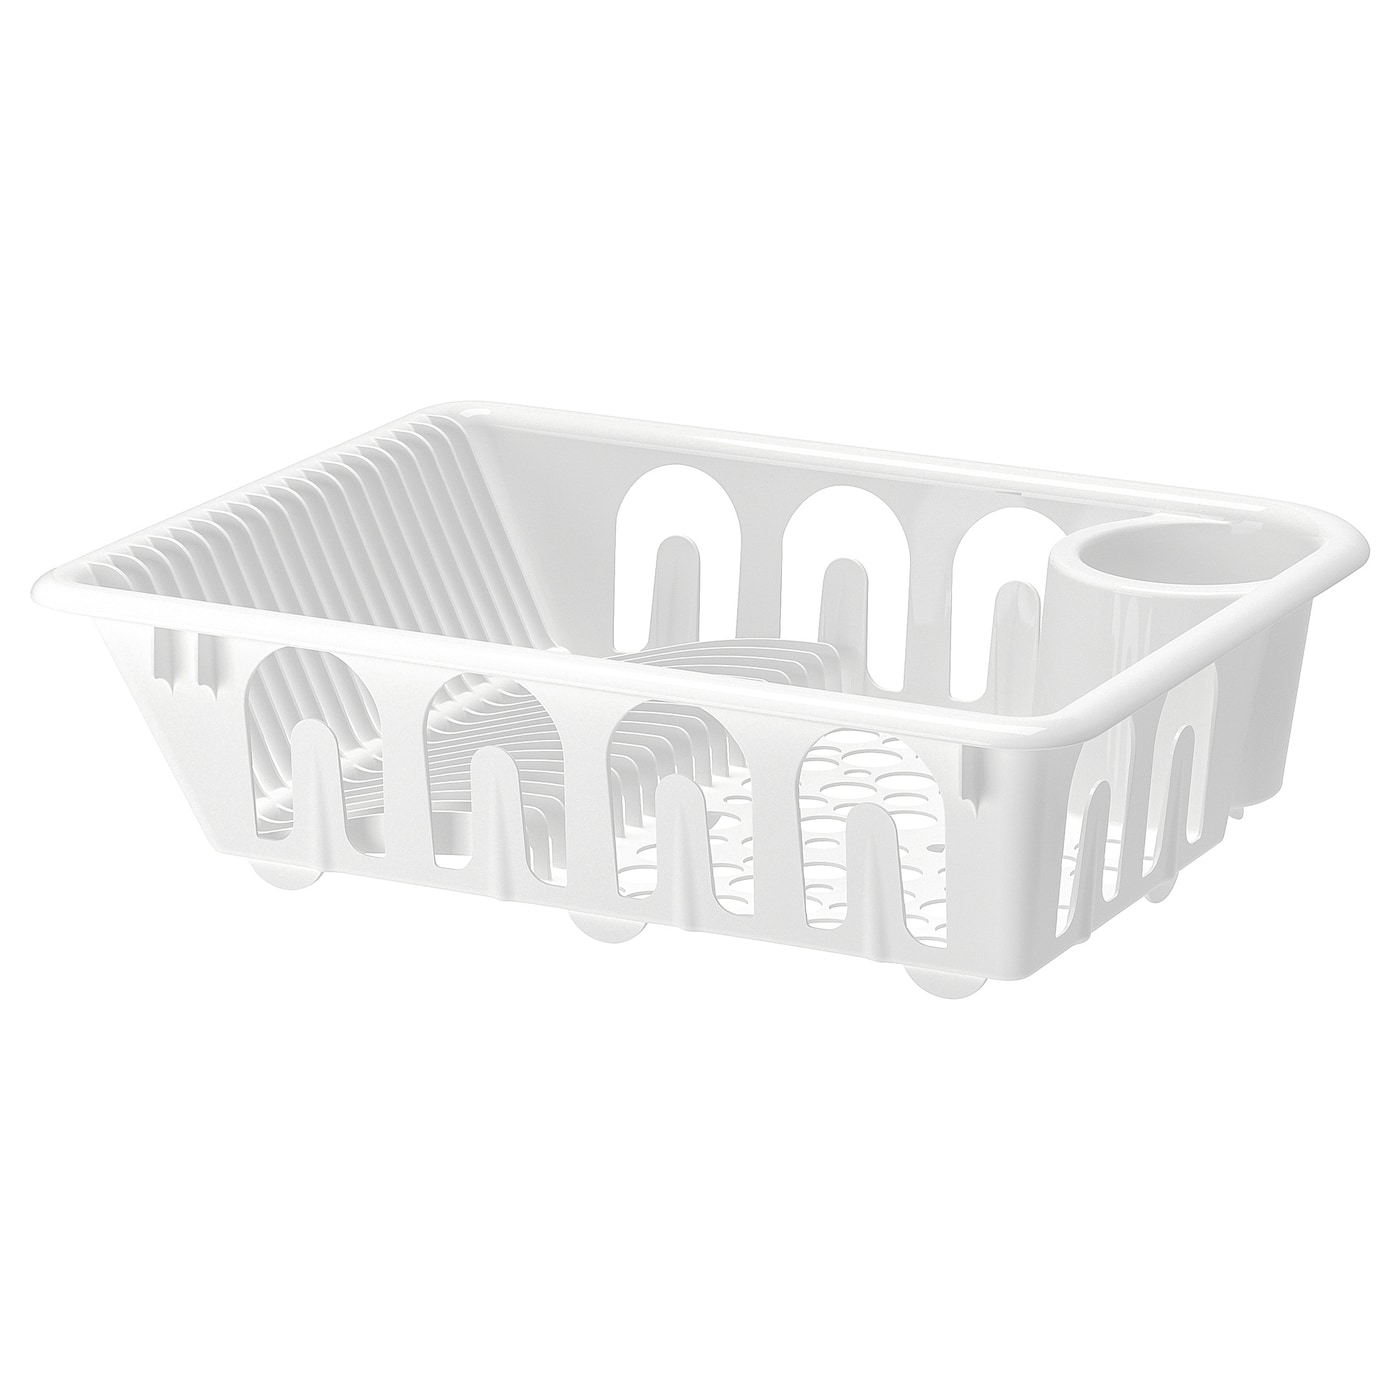 FLUNDRA ФЛЮНДРА Сушилка посудная, белый IKEA сушилка для посуды и стаканов esprado platinos 0013926e212